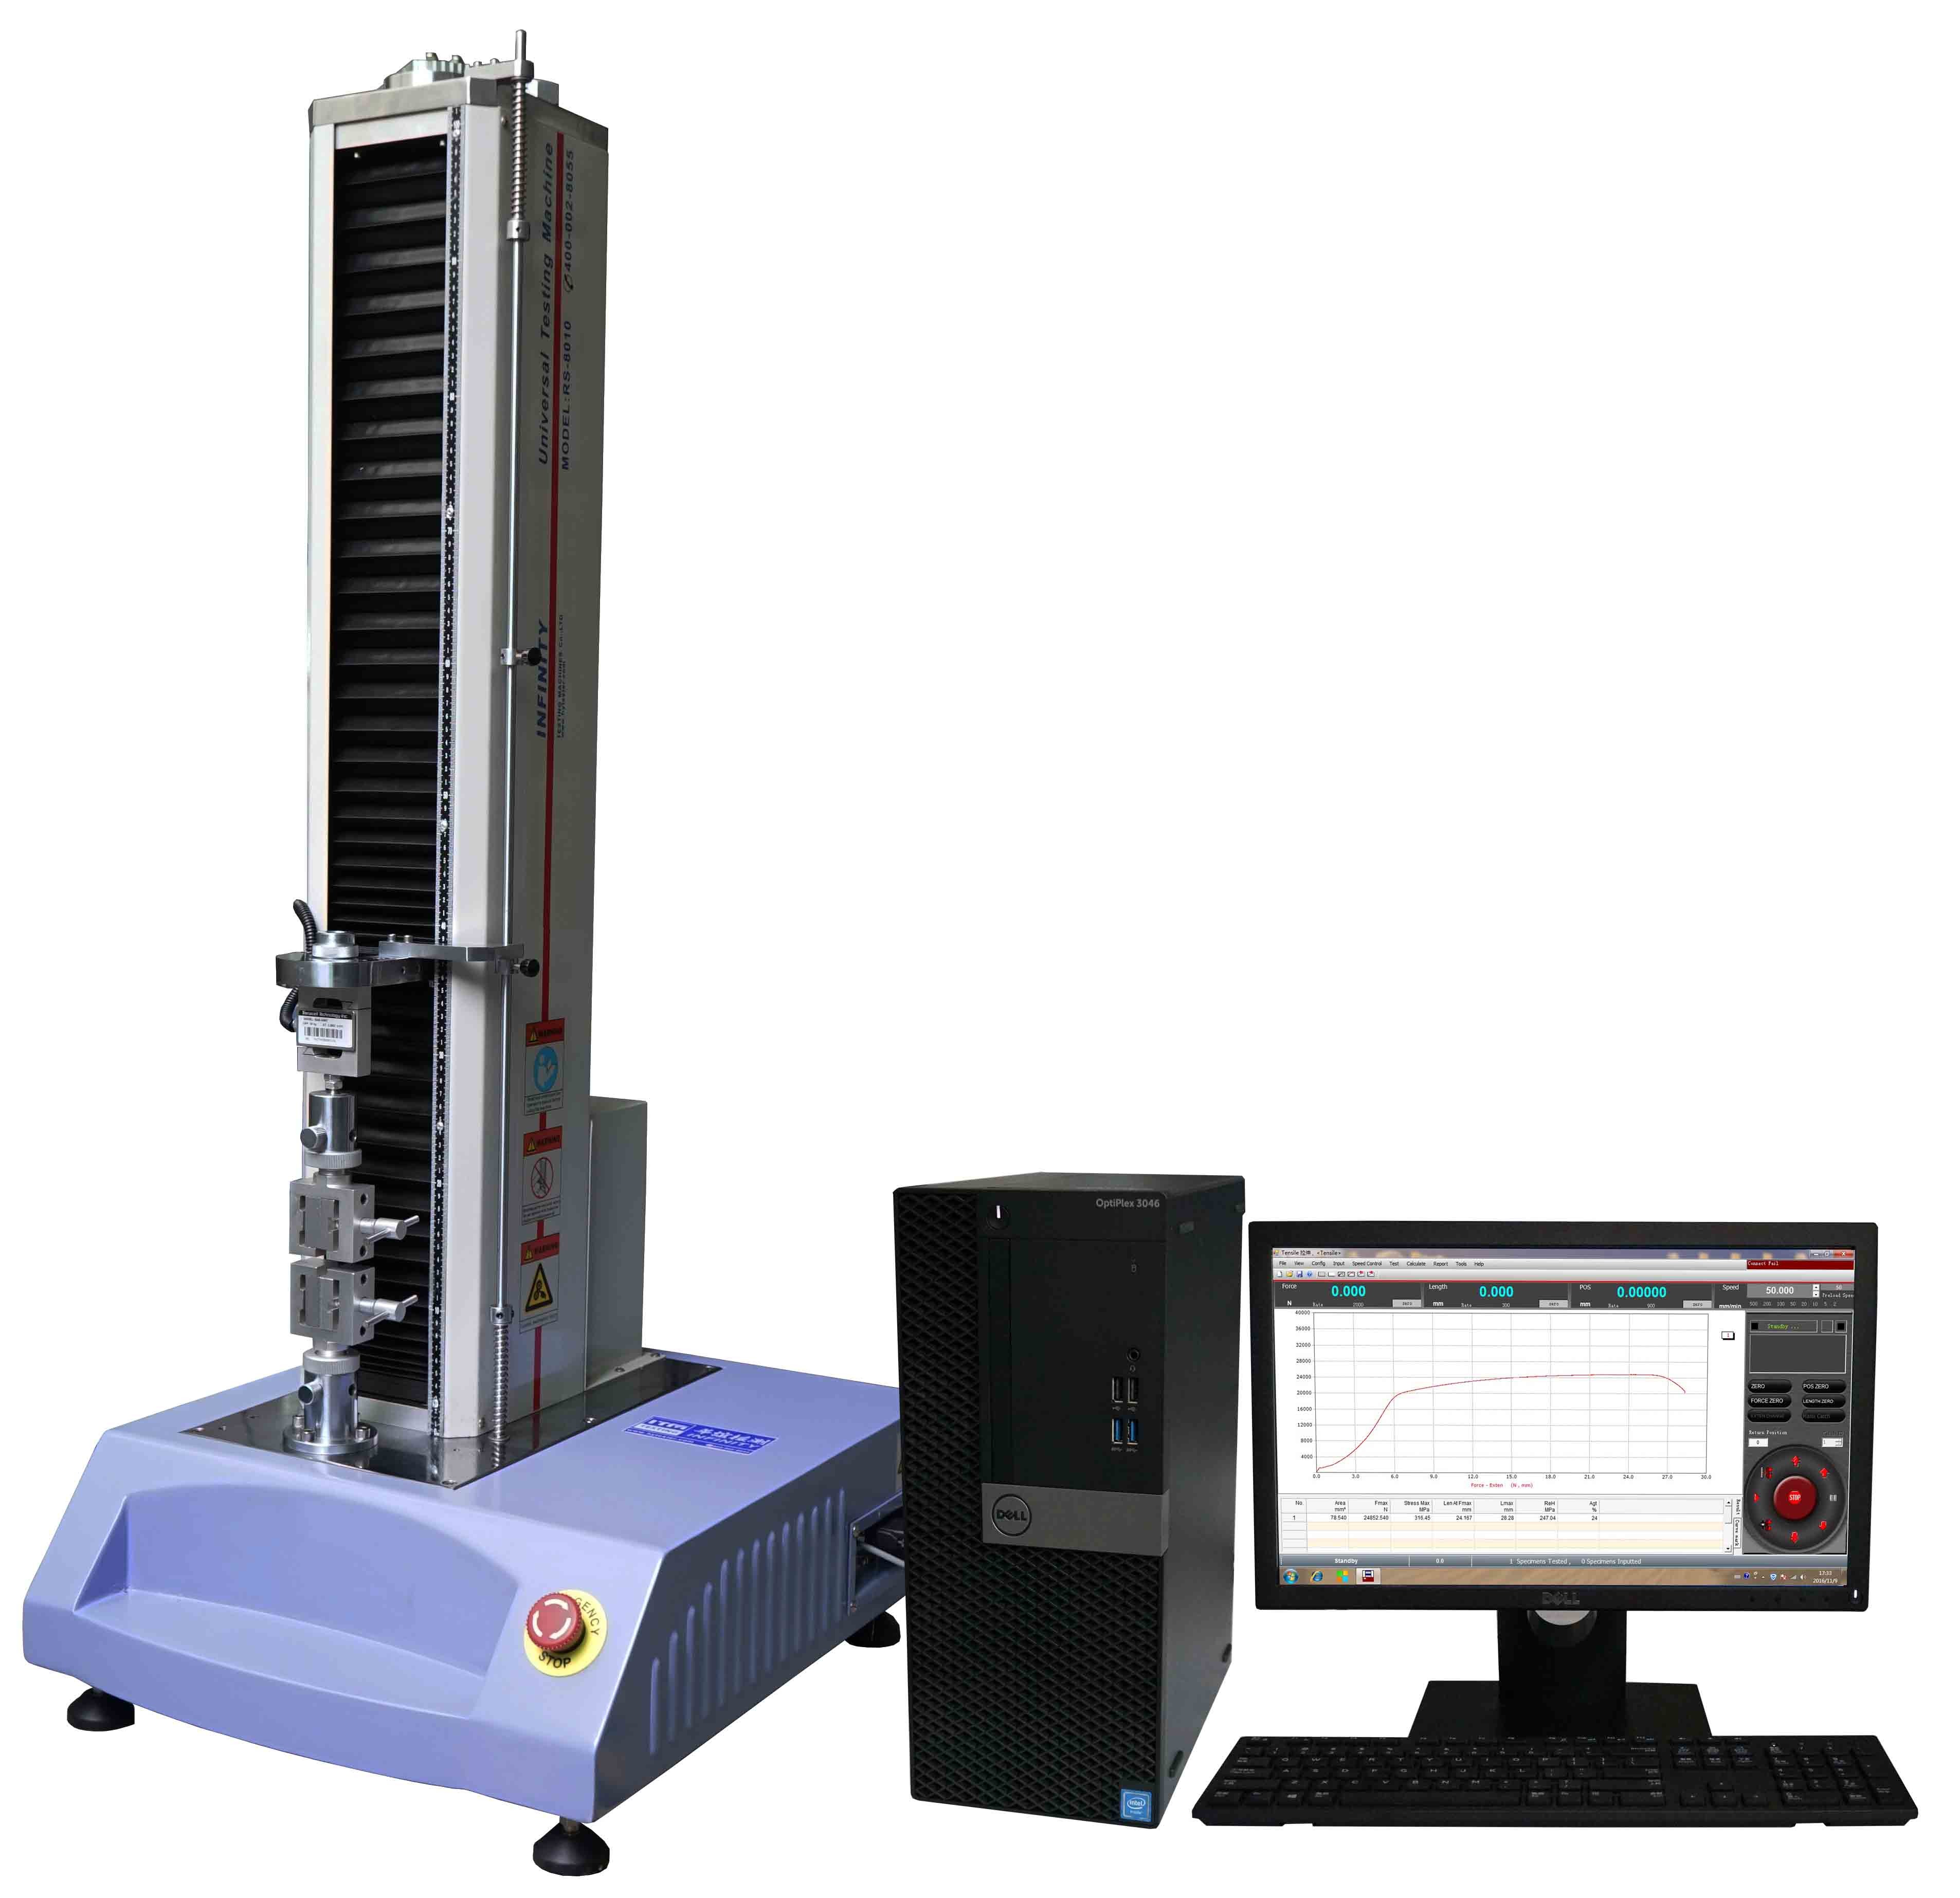 Capacité universelle électronique ASTM D3330 de la machine d'essai de servocommande 5KN